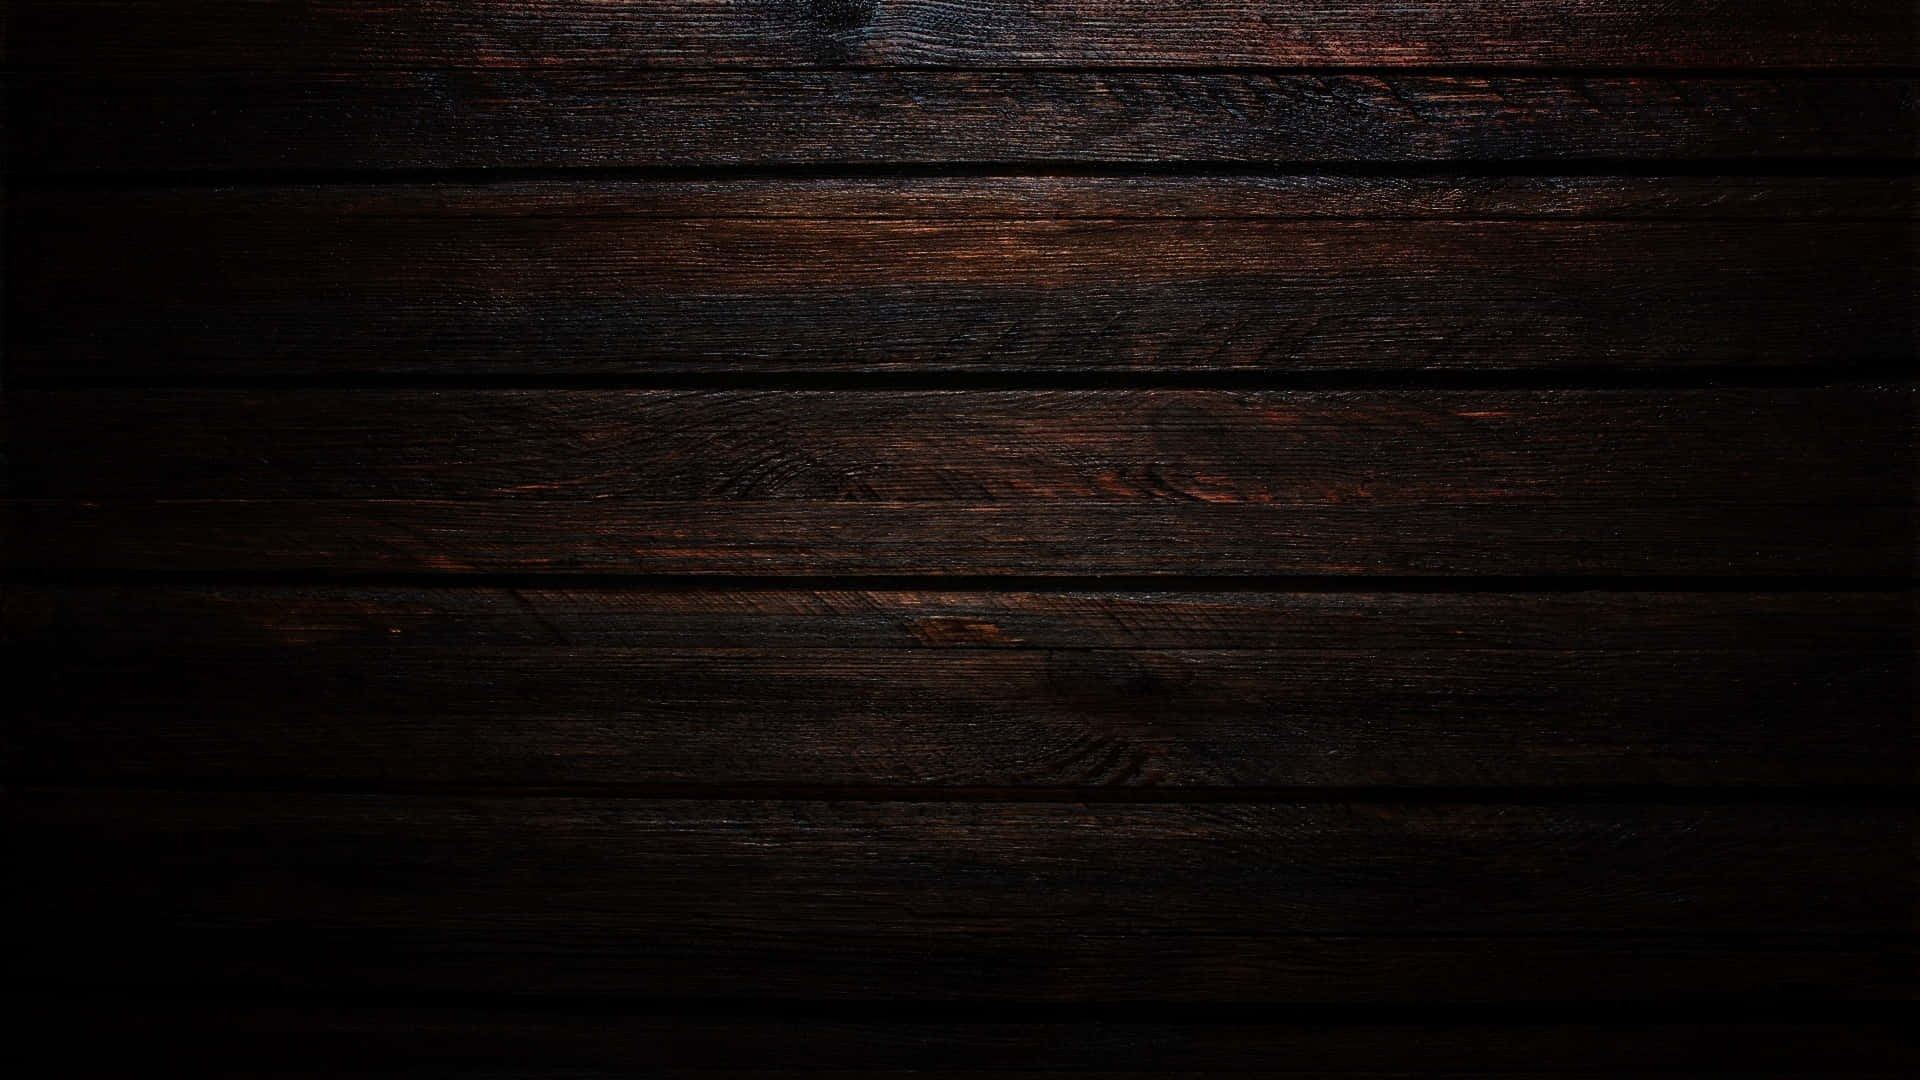 dark wood background